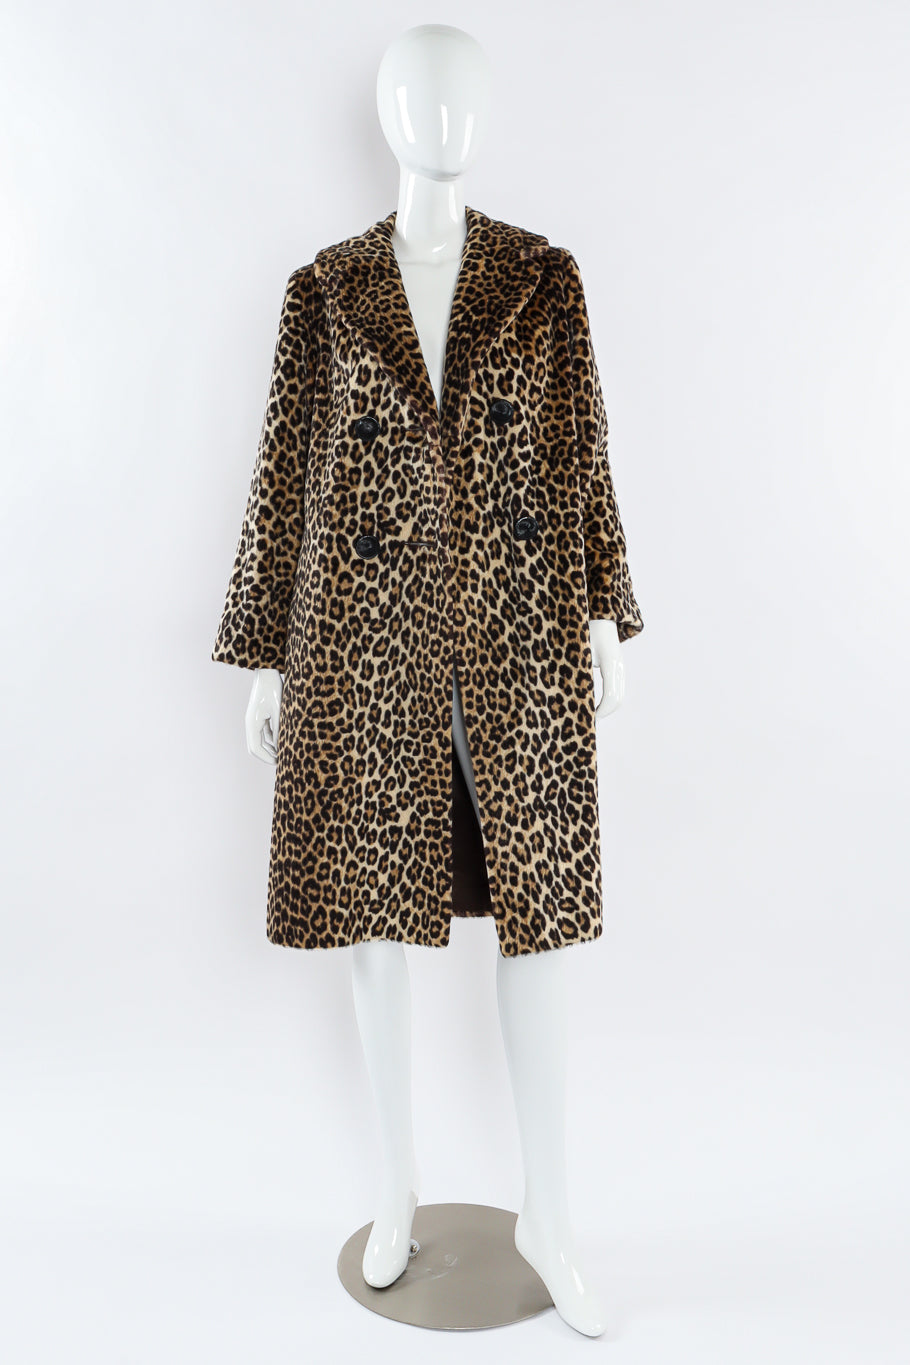 Vintage Carol Brent Double Breasted Leopard Faux Fur Coat mannequin front unbuttoned @ Recess LA